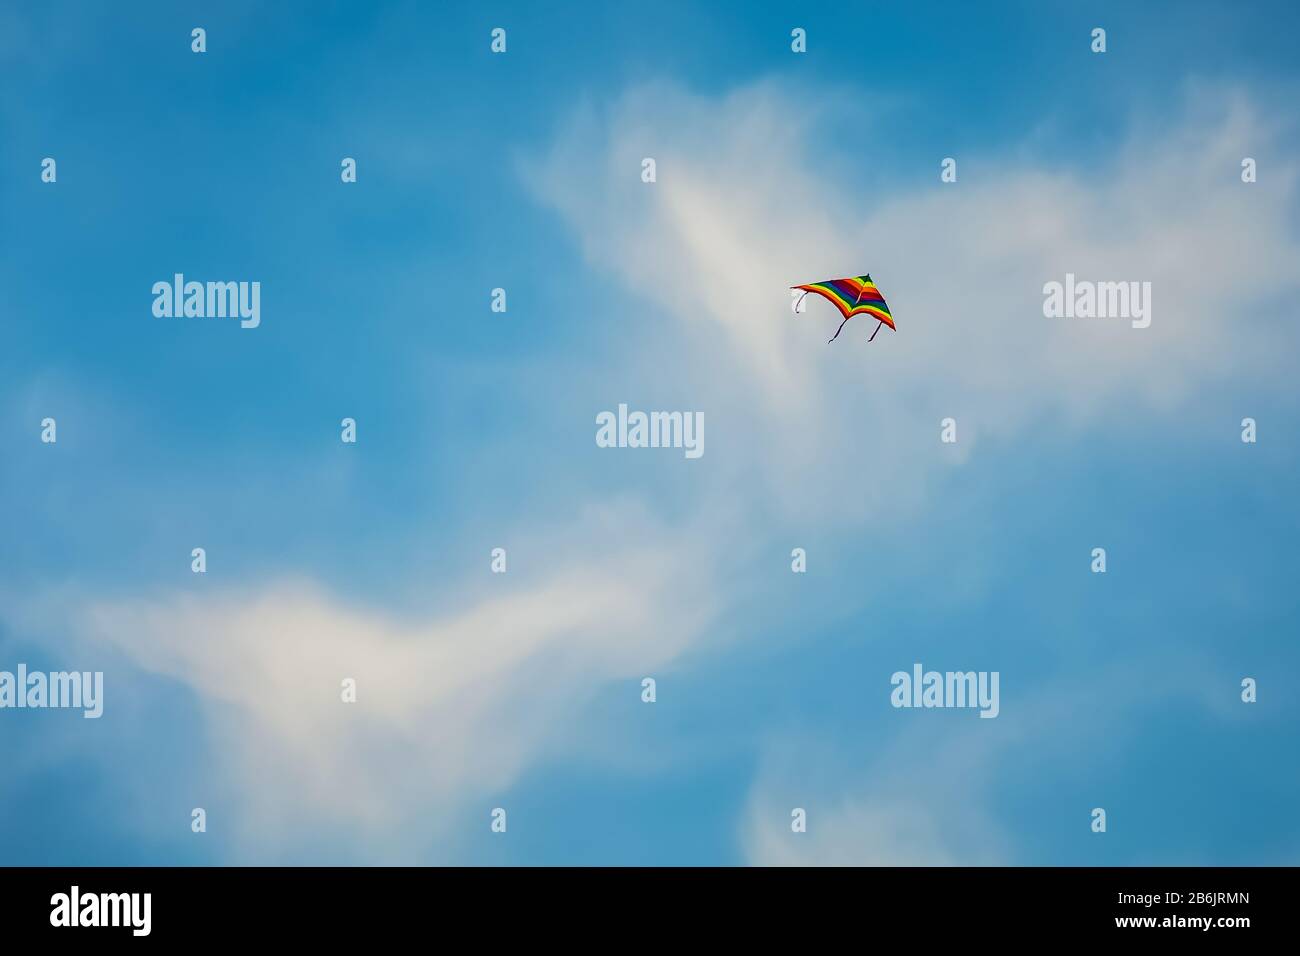 Einzeldrachen fliegen auf blauem Himmel mit Wolken Hintergrund am Fanateer Strand - Jubail Saudi-Arabien. Stockfoto